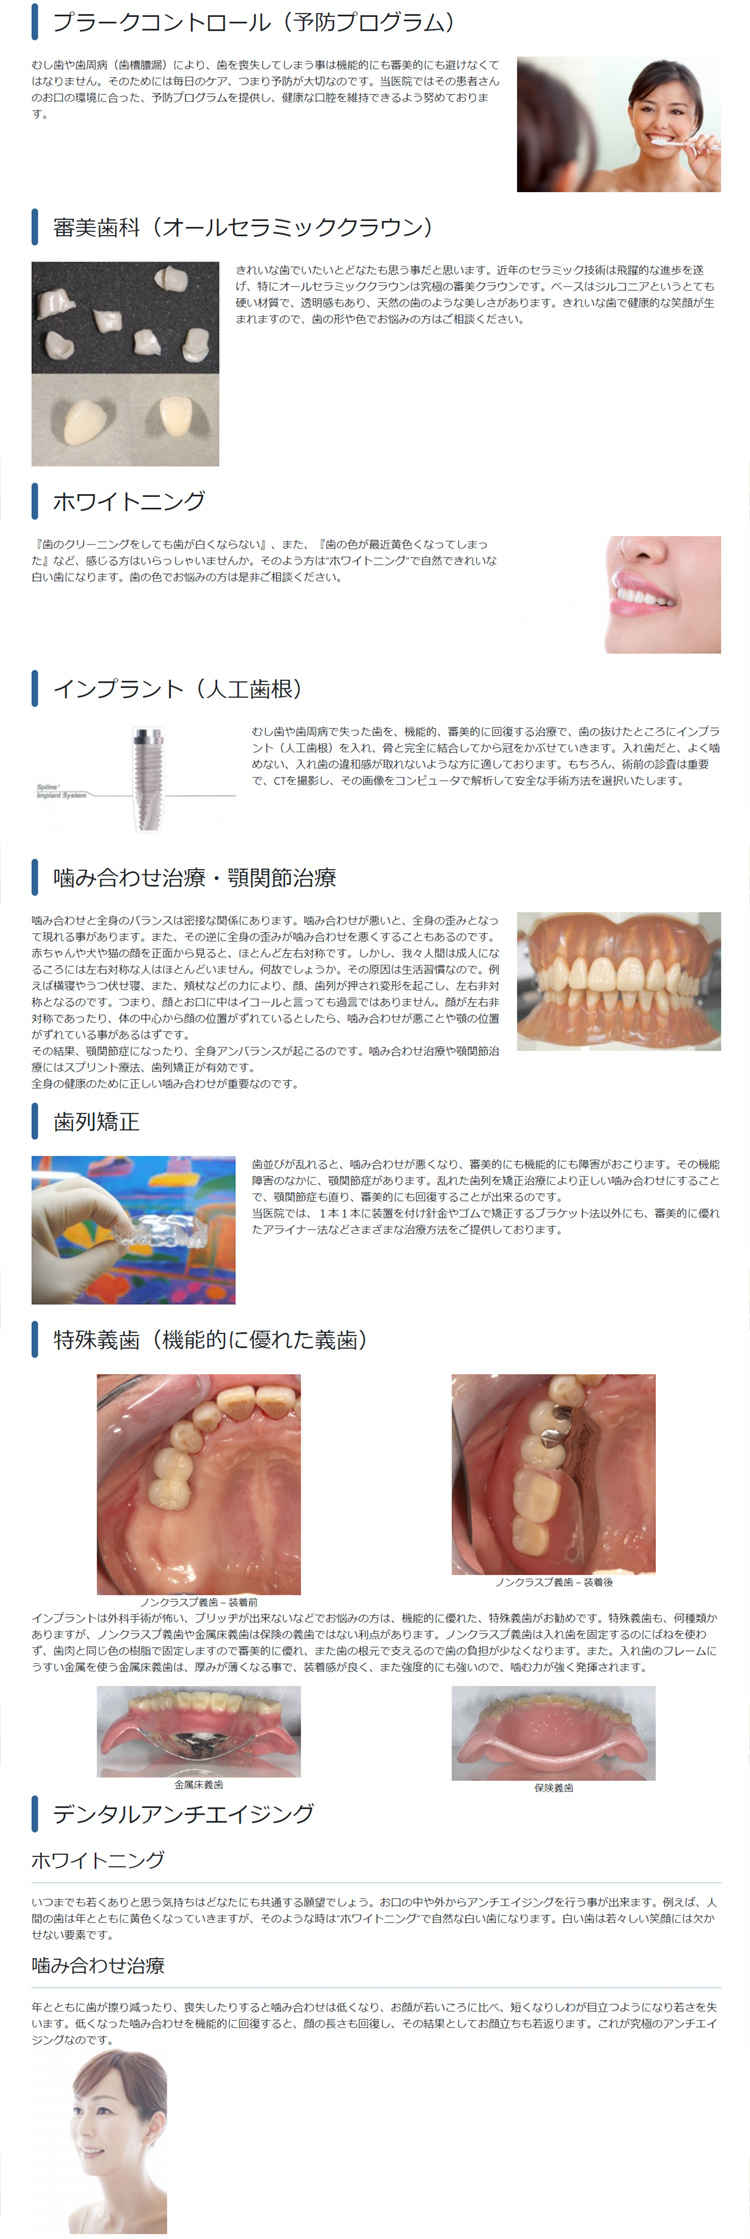 小川歯科クリニックのお知らせ内容